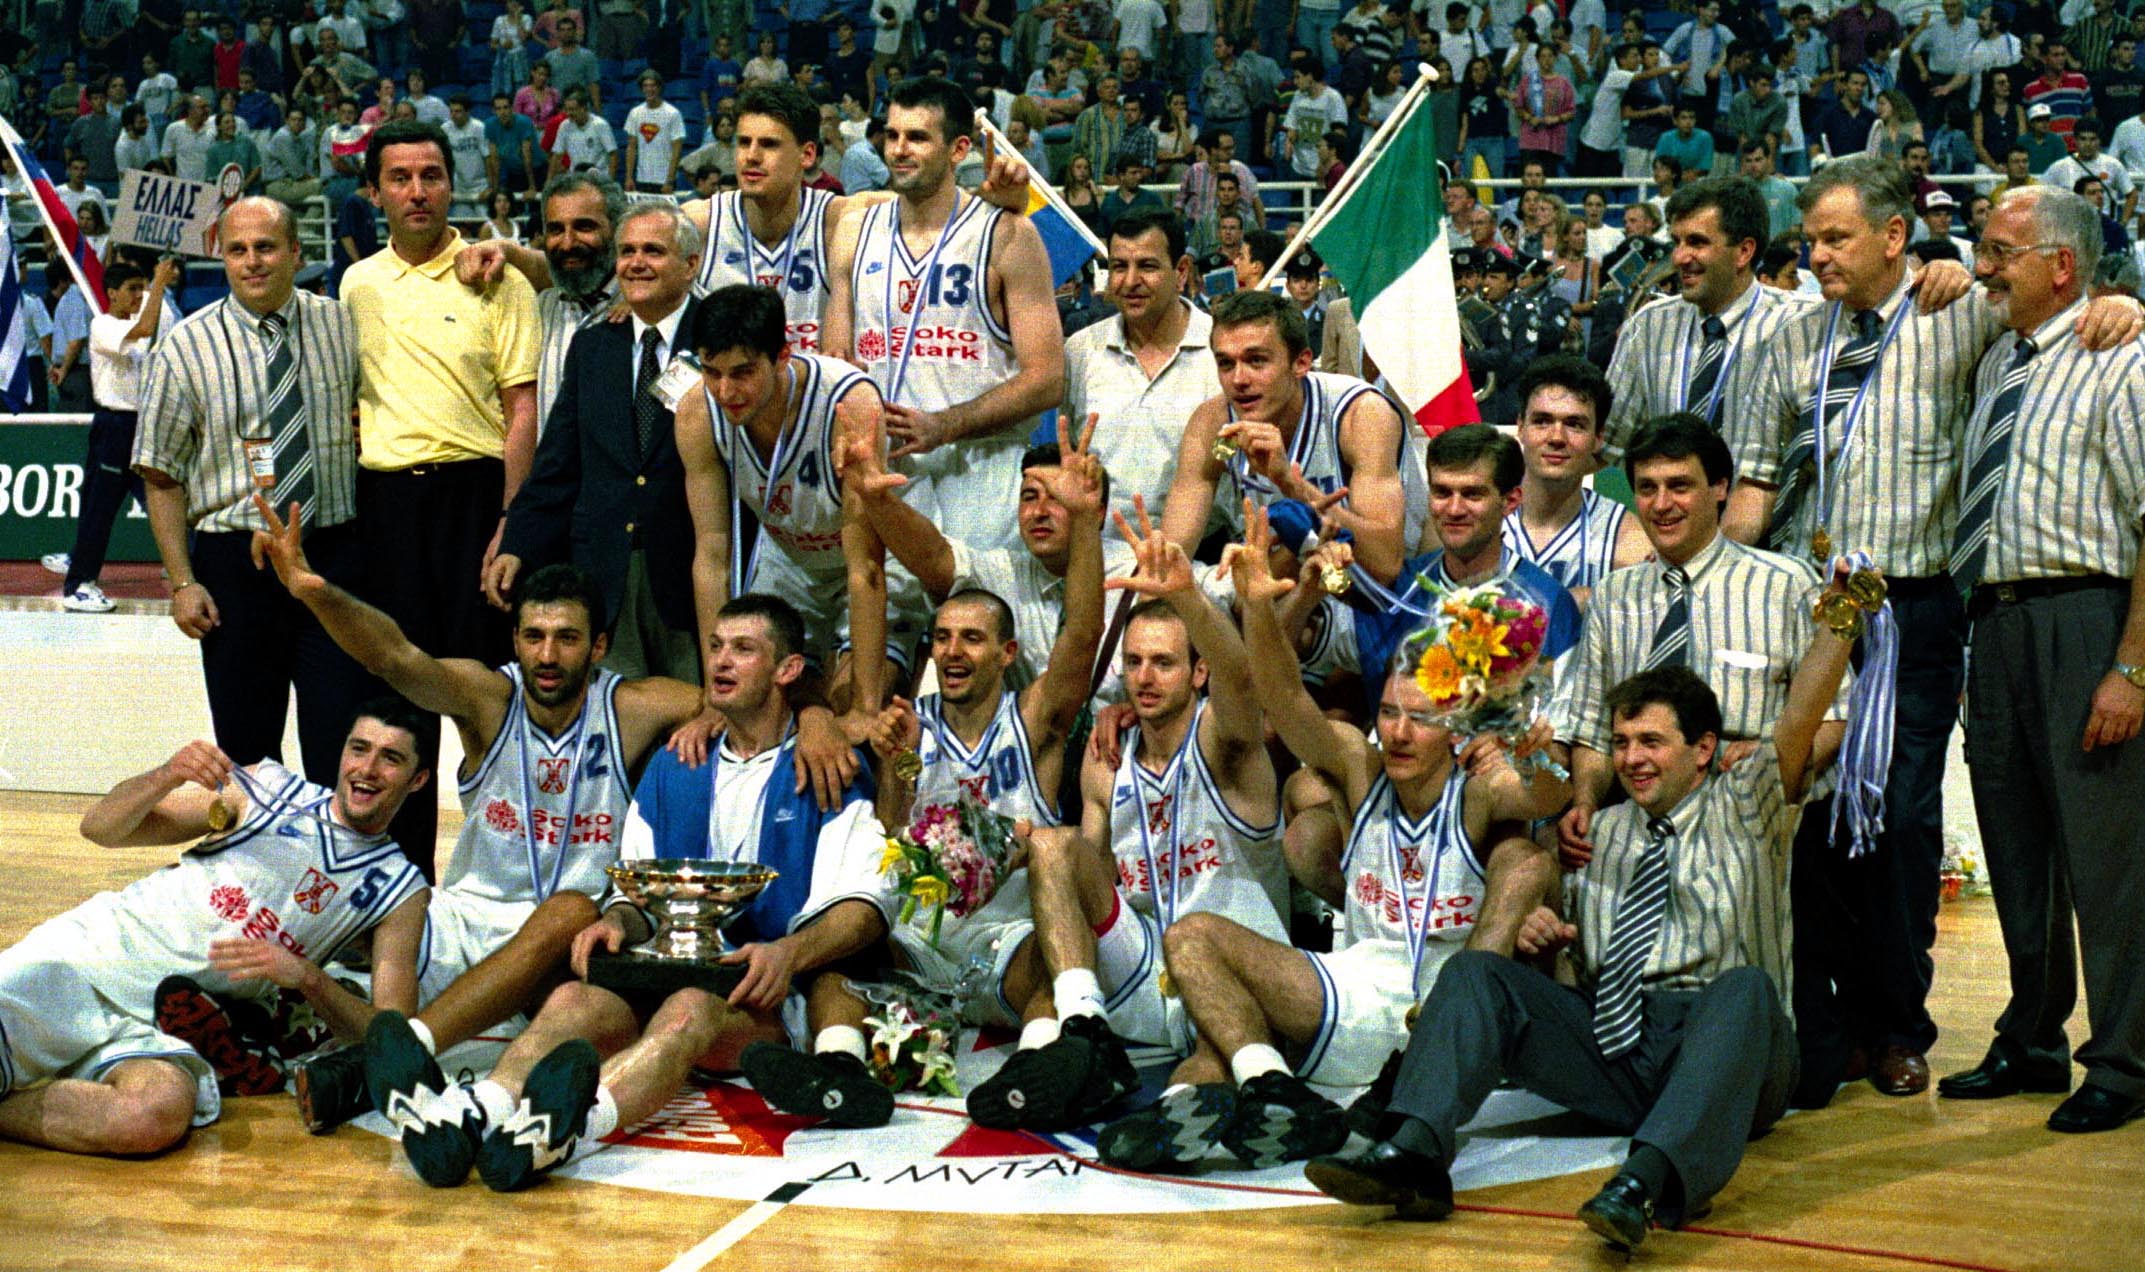 Reprezentacija Jugoslavije po osvajanju zlata 1995. godine (© MN Press)